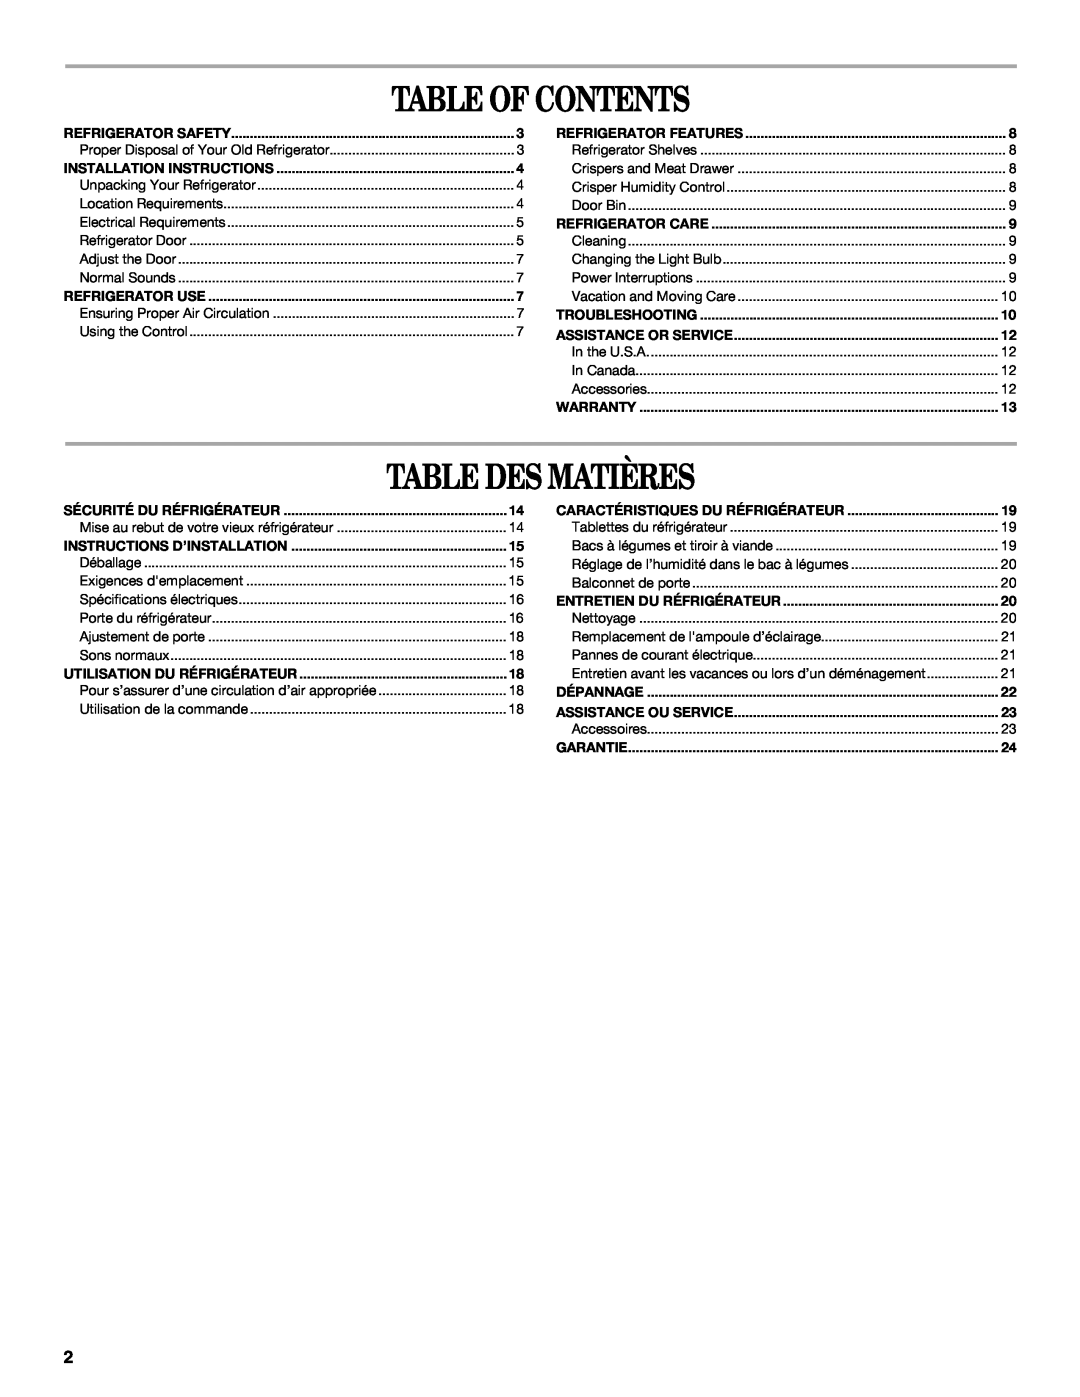 Whirlpool W10326802B manual Table Of Contents, Table Des Matières, Installation Instructions, Sécurité Du Réfrigérateur 